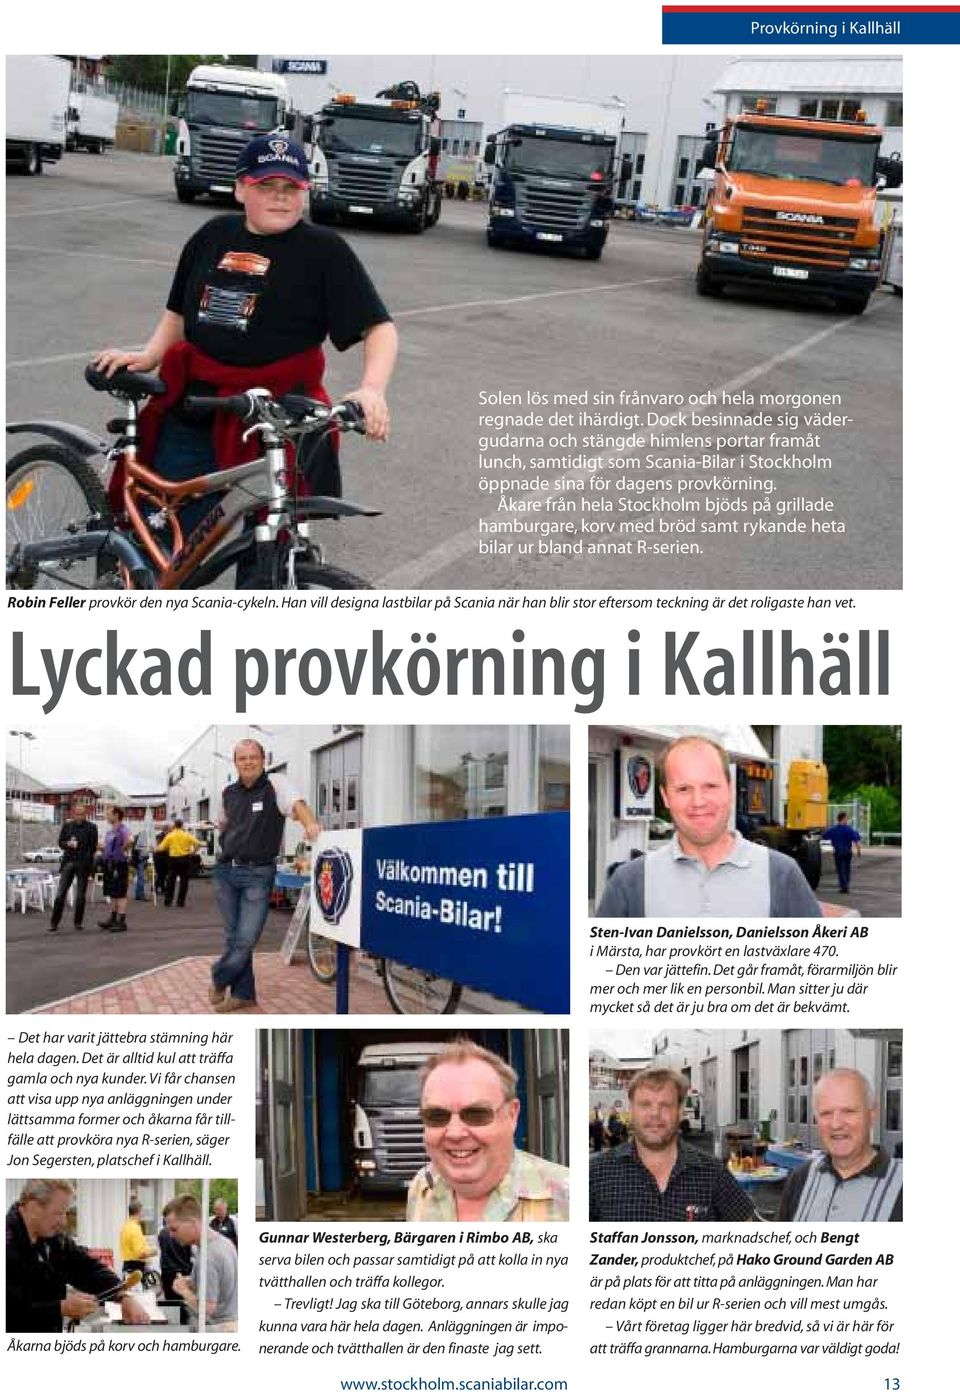 Åkare från hela Stockholm bjöds på grillade hamburgare, korv med bröd samt rykande heta bilar ur bland annat R-serien. Robin Feller provkör den nya Scania-cykeln.